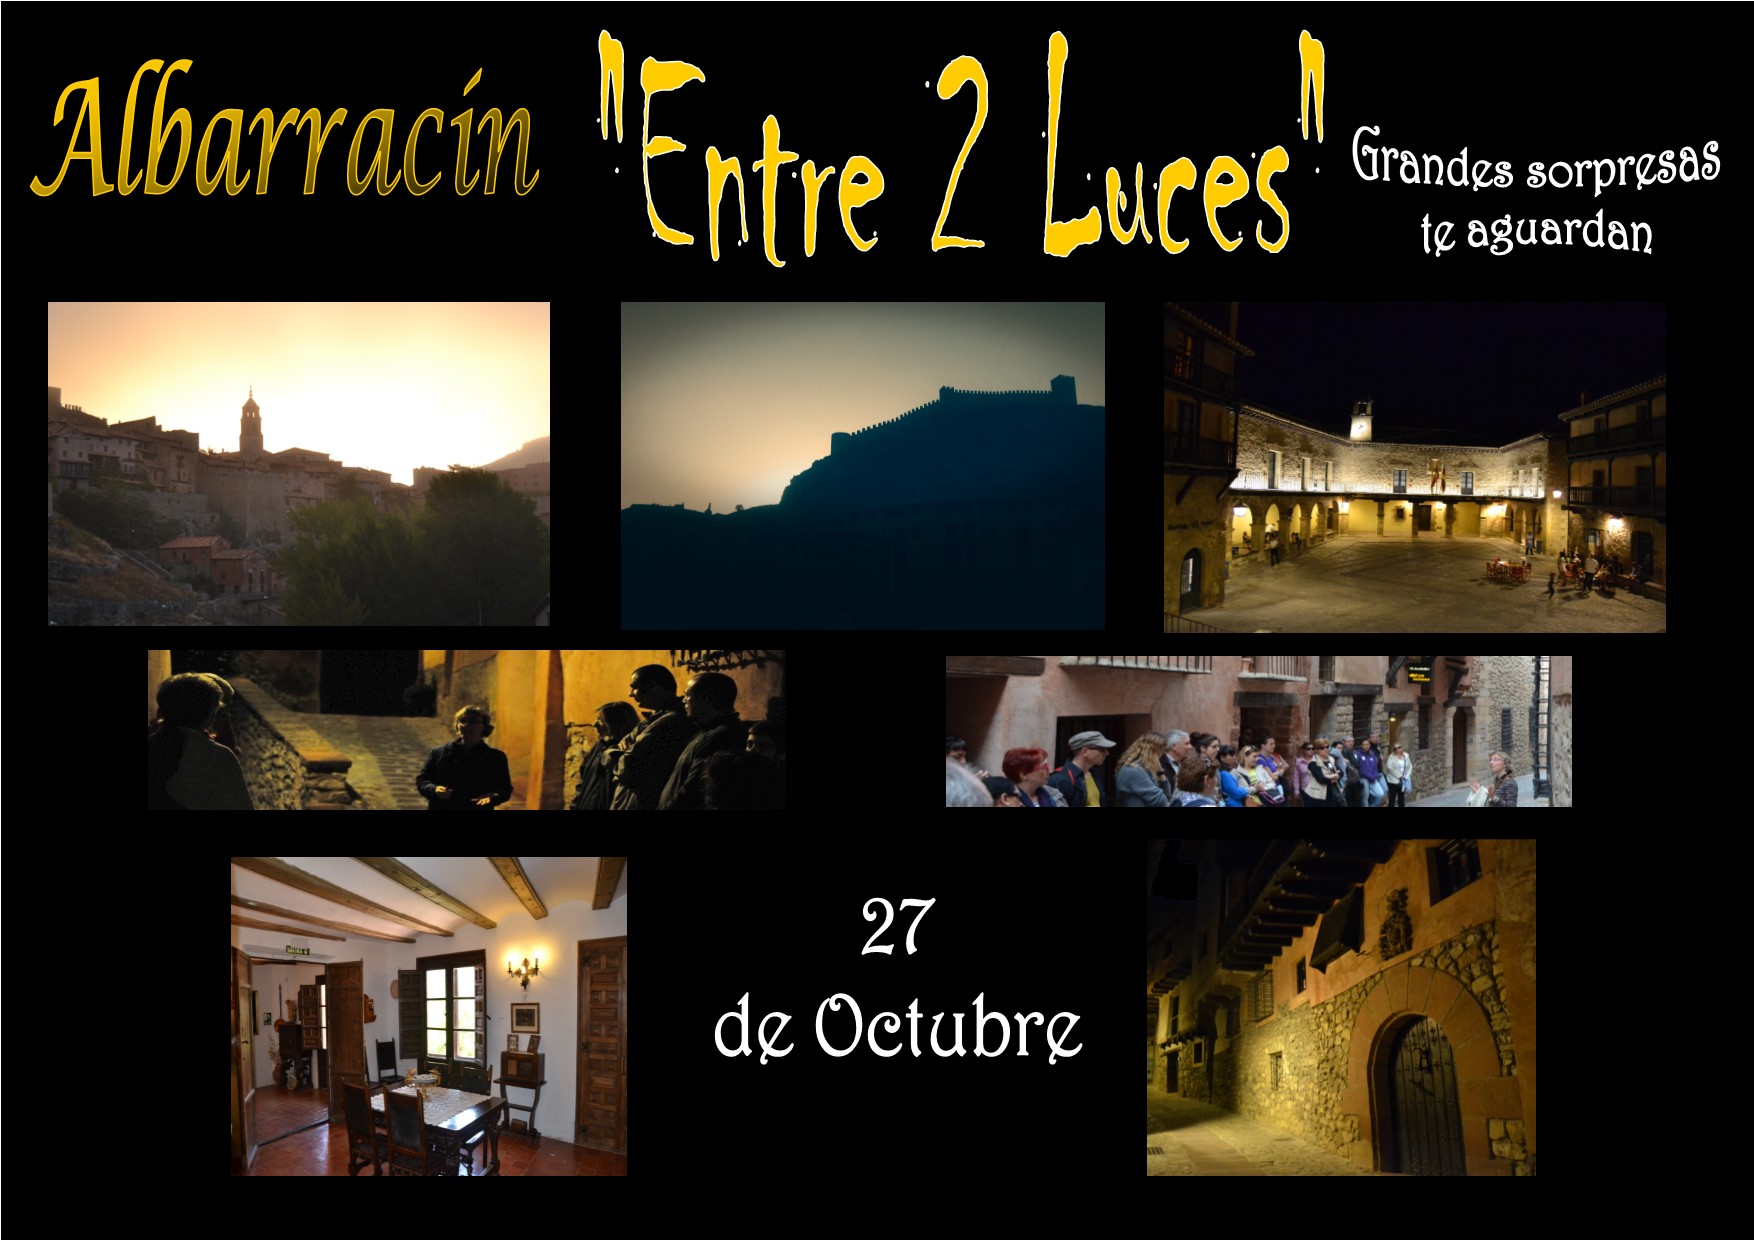 Este Sábado 27 de Octubre…Albarracín «Entre 2 Luces» con sorpresas!!